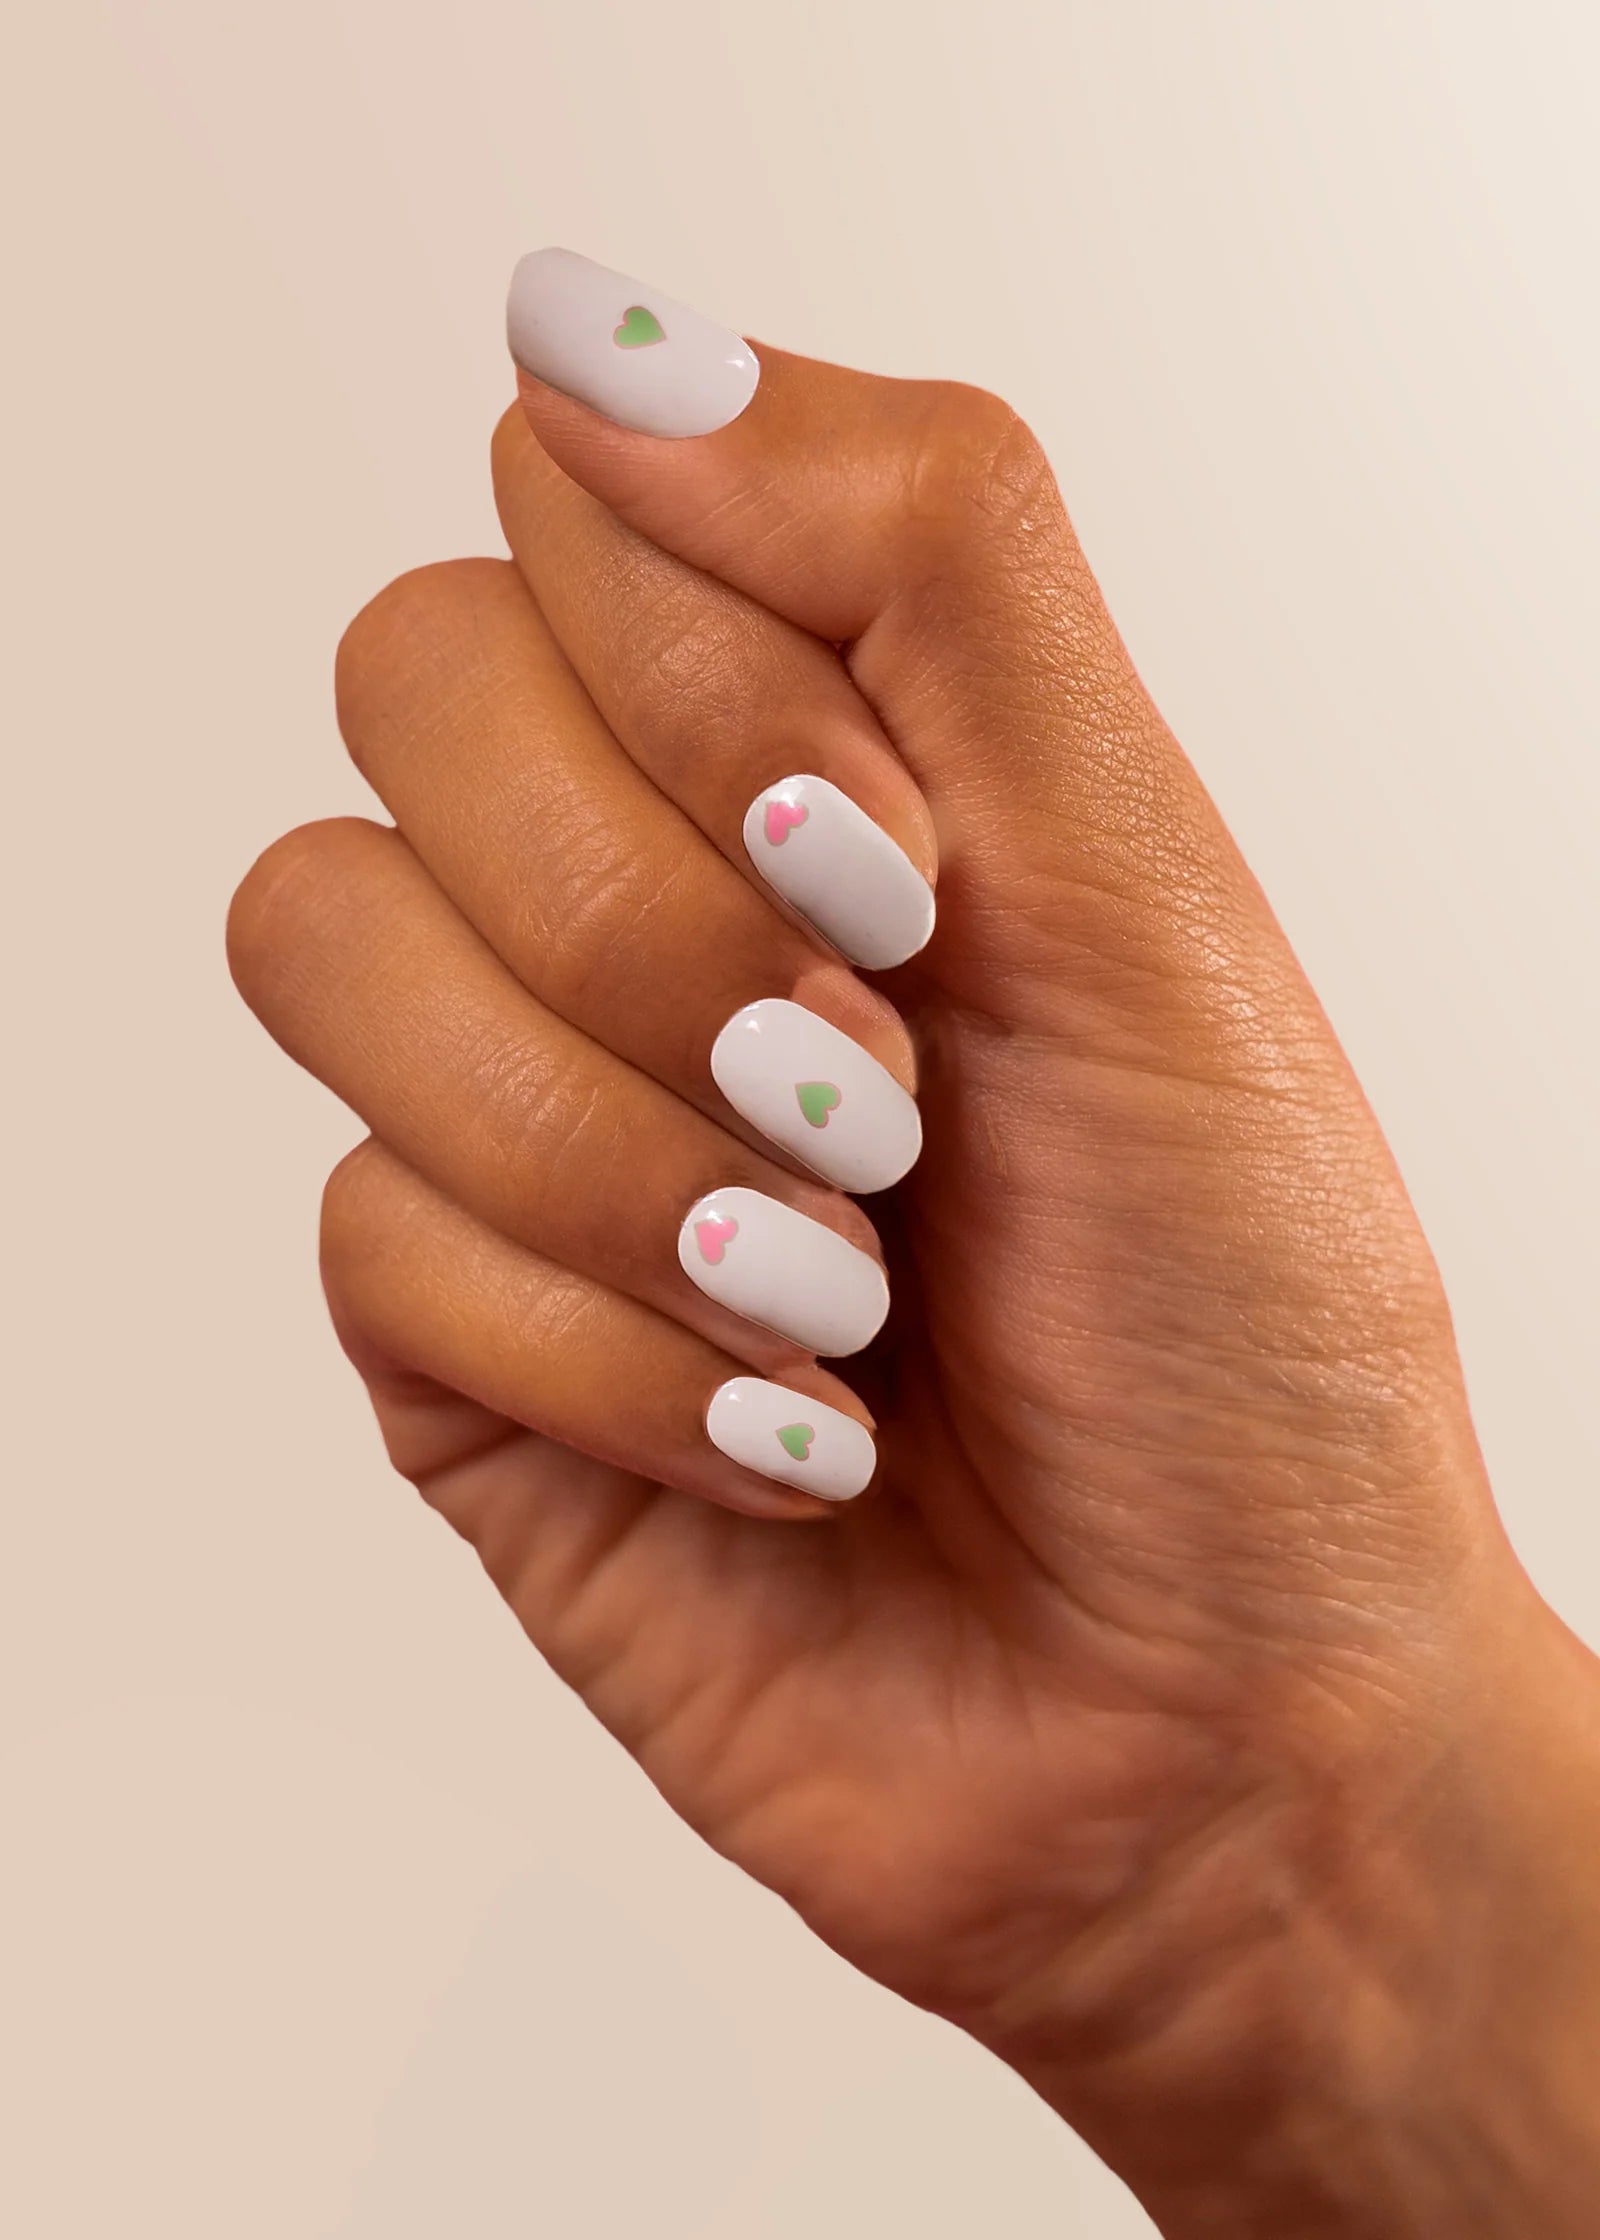 Decorating nails is easier than ever with 3D nail sticker kits. | Nail art  kit, Nails, Nail art